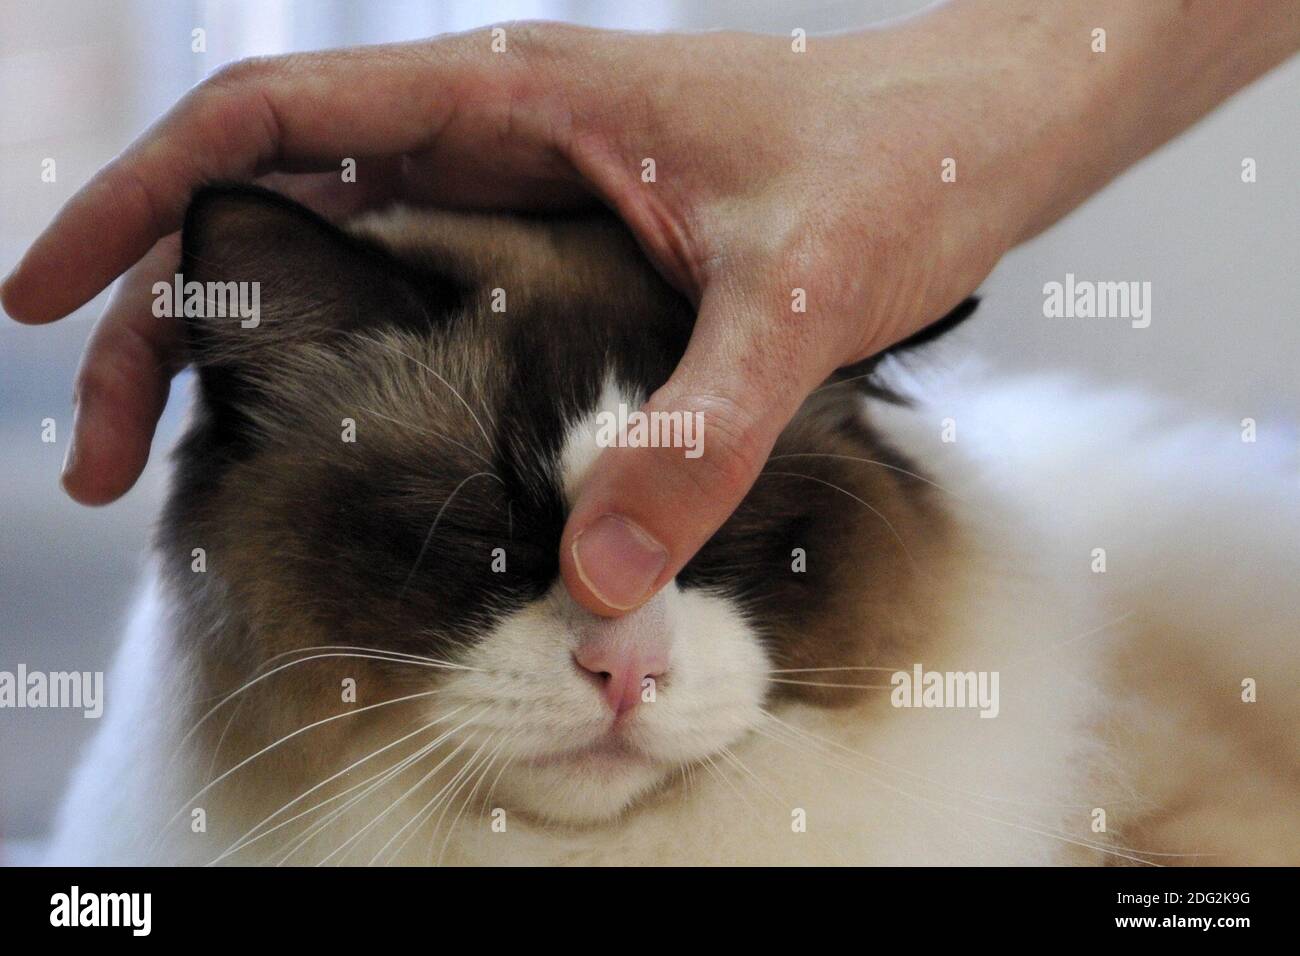 Mlada Boleslav, Tschechische Republik. Dezember 2020. Ragdoll Katze Genießen Sie die Kopfmassagen und diese Katze genießt jeden Moment davon. Quelle: Slavek Ruta/ZUMA Wire/Alamy Live News Stockfoto